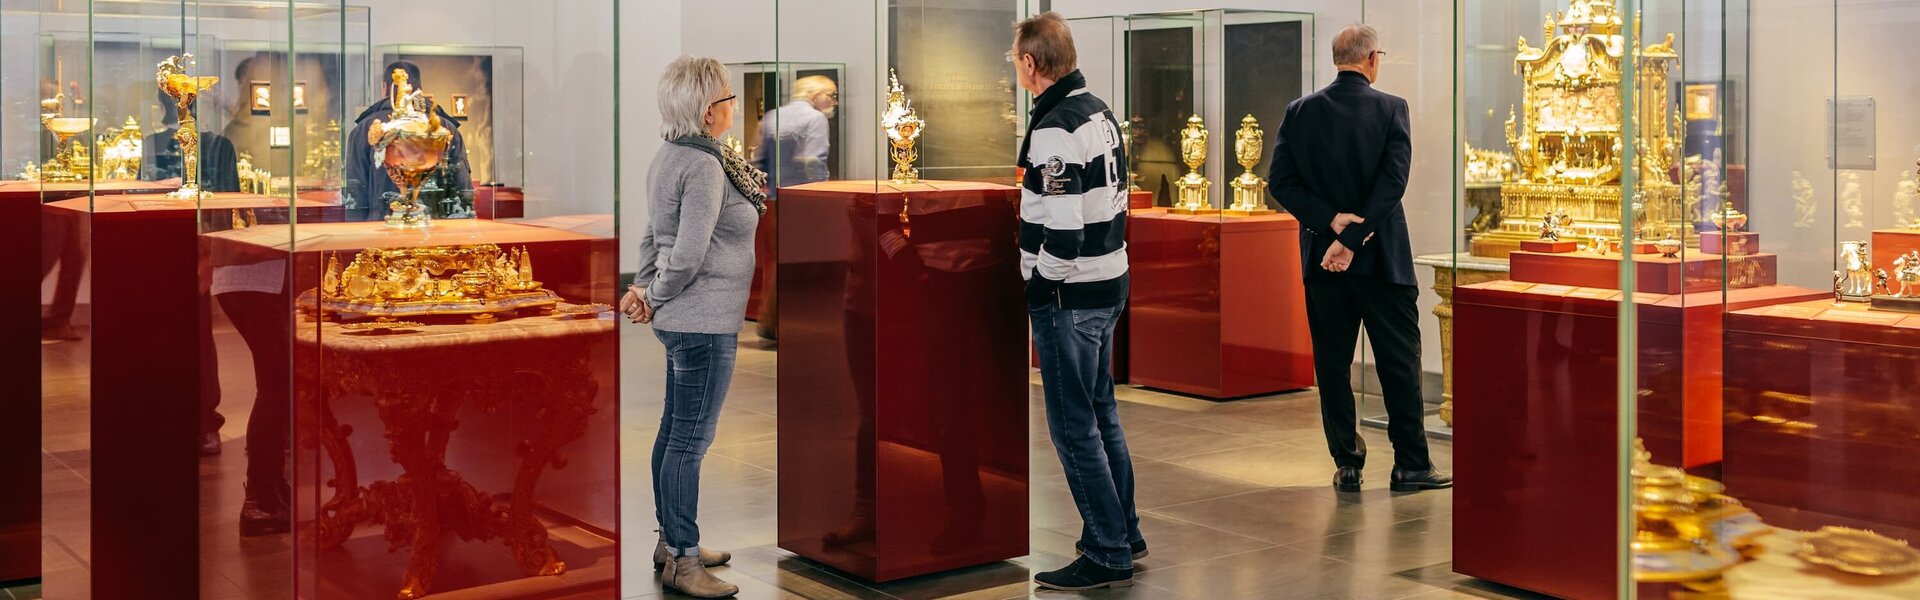 Ausstellungsraum mit Vitrinen erkennbar, in welchen sich Ausstellungsstücke befinden, welche von einigen Personen betrachtet werden.